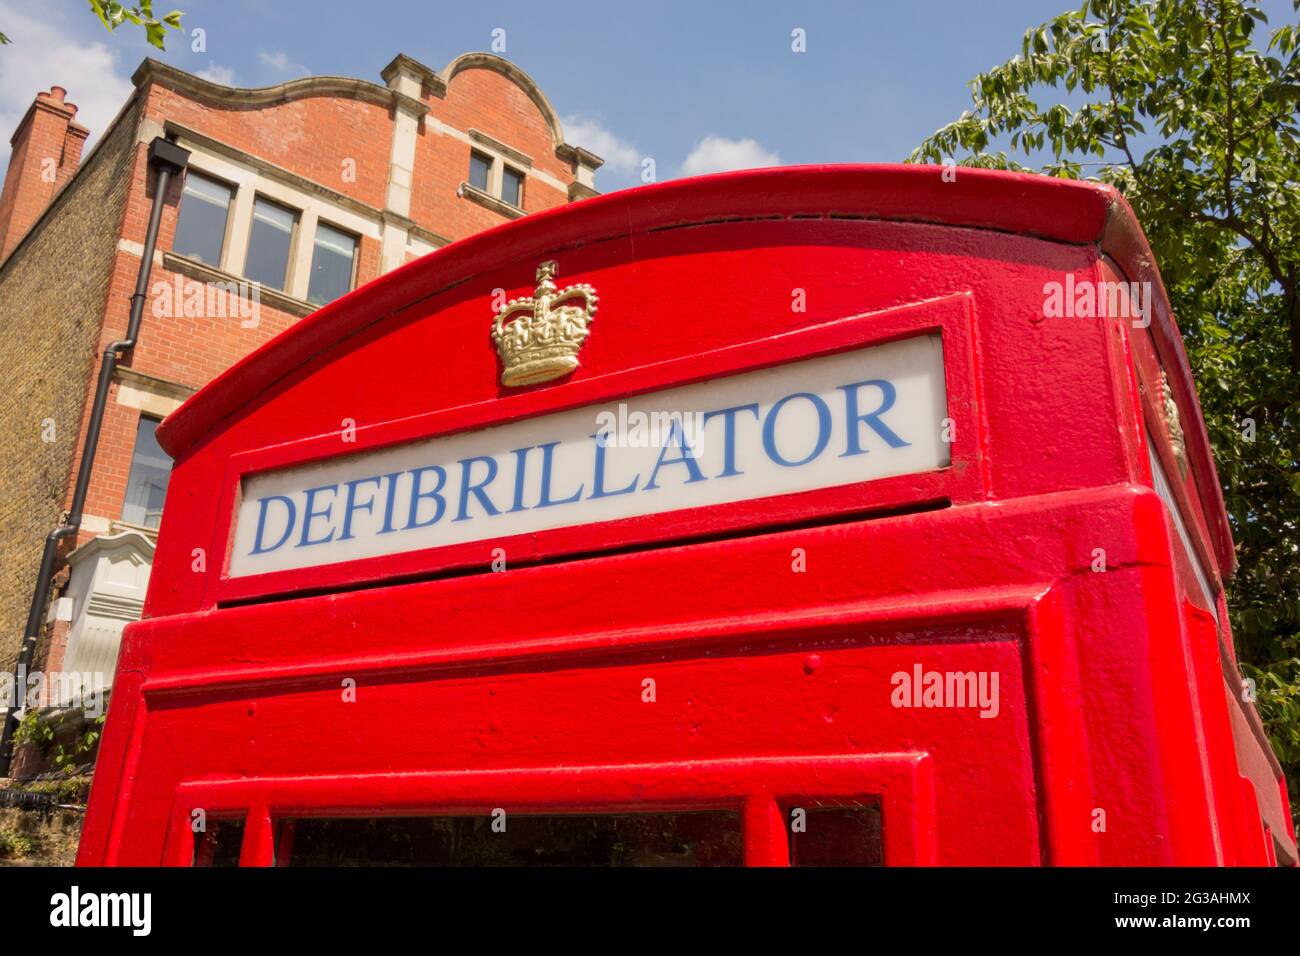 Primer plano de los carteles en un desfibrilador de acceso público almacenado en una caja telefónica de Londres reutilizada Foto de stock